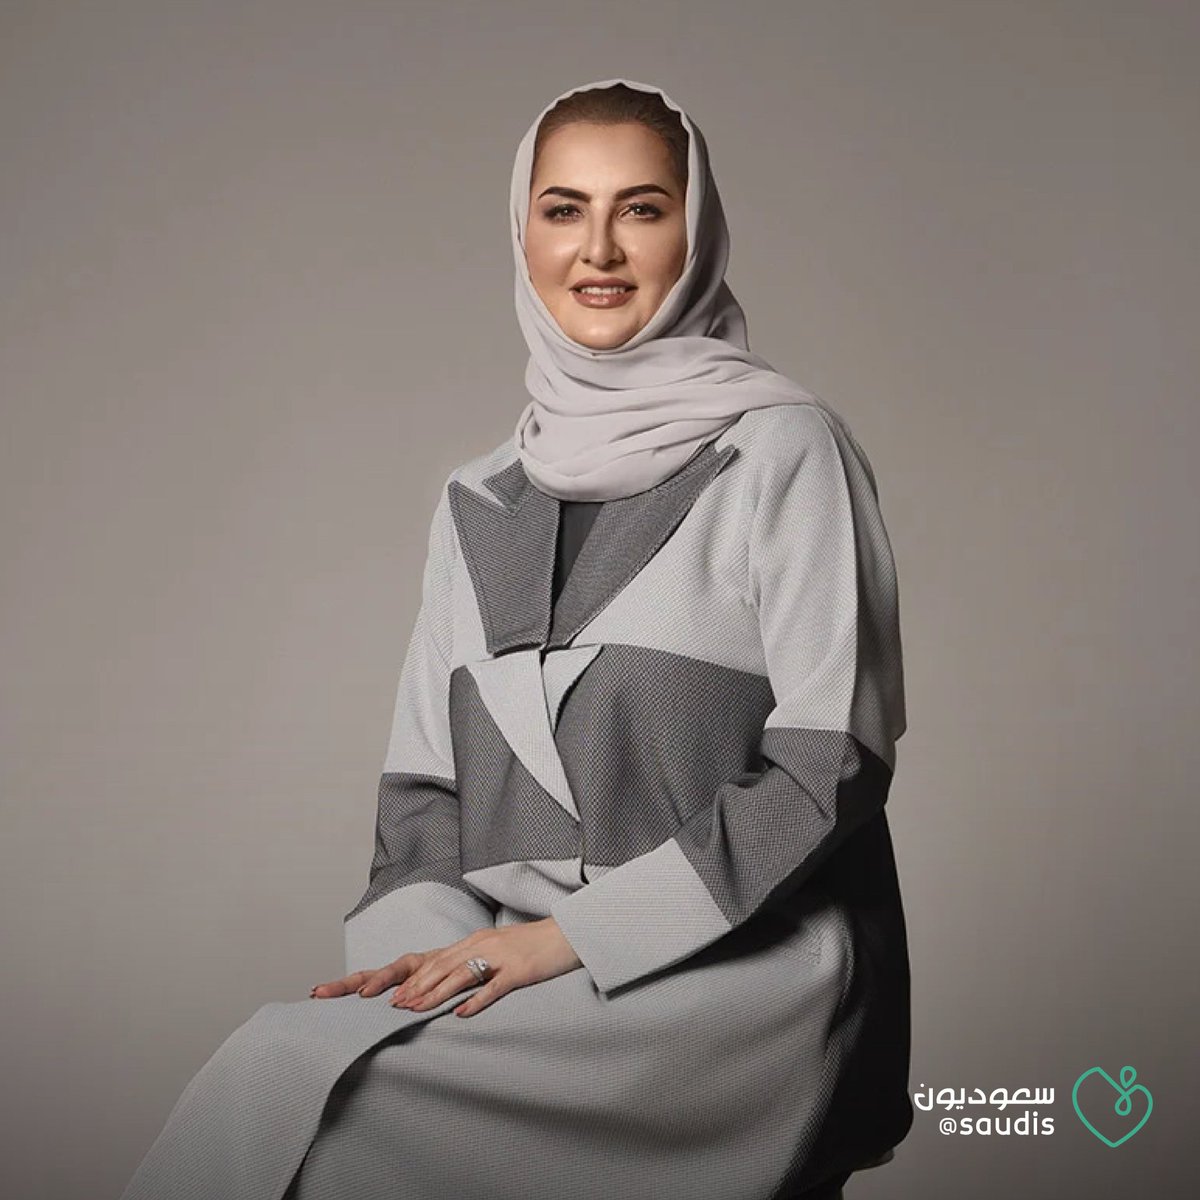 نموذج سعودي مشرّف.. الدكتورة #خلود_المانع ضمن قائمة أفضل 10 مؤثرين بالعالم في الذكاء الاصطناعي وتقنية المعلومات وعلم البيانات @Khulood_Almani #سعوديون #نادي_الغد_الإعلامي